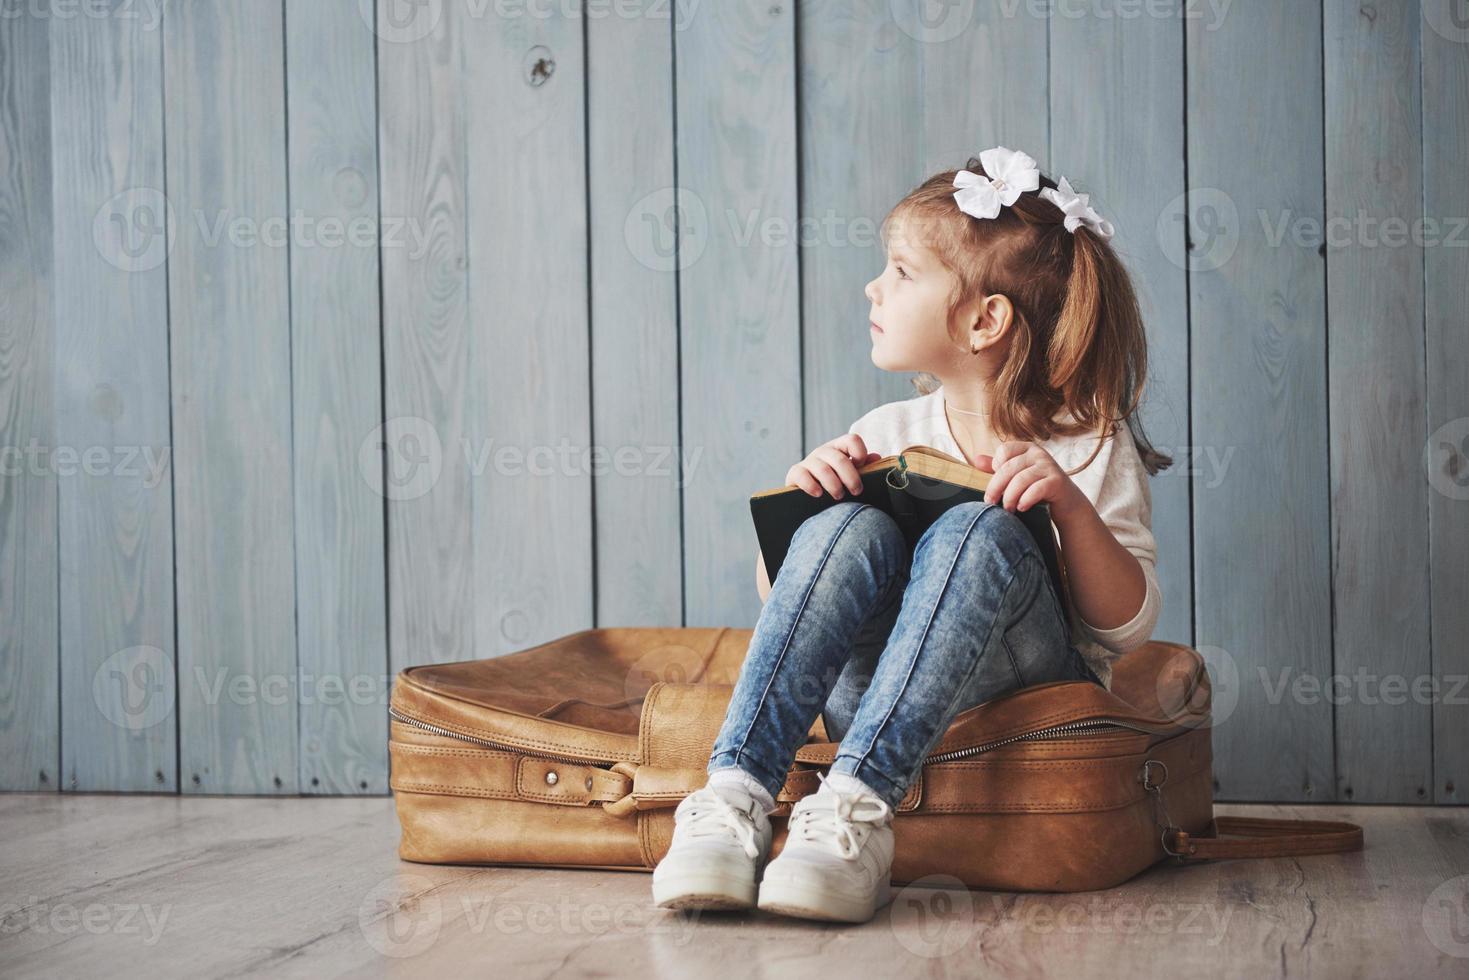 klaar voor grote reizen. gelukkig klein meisje dat een interessant boek leest met een grote aktetas en glimlacht. reizen, vrijheid en verbeeldingsconcept foto